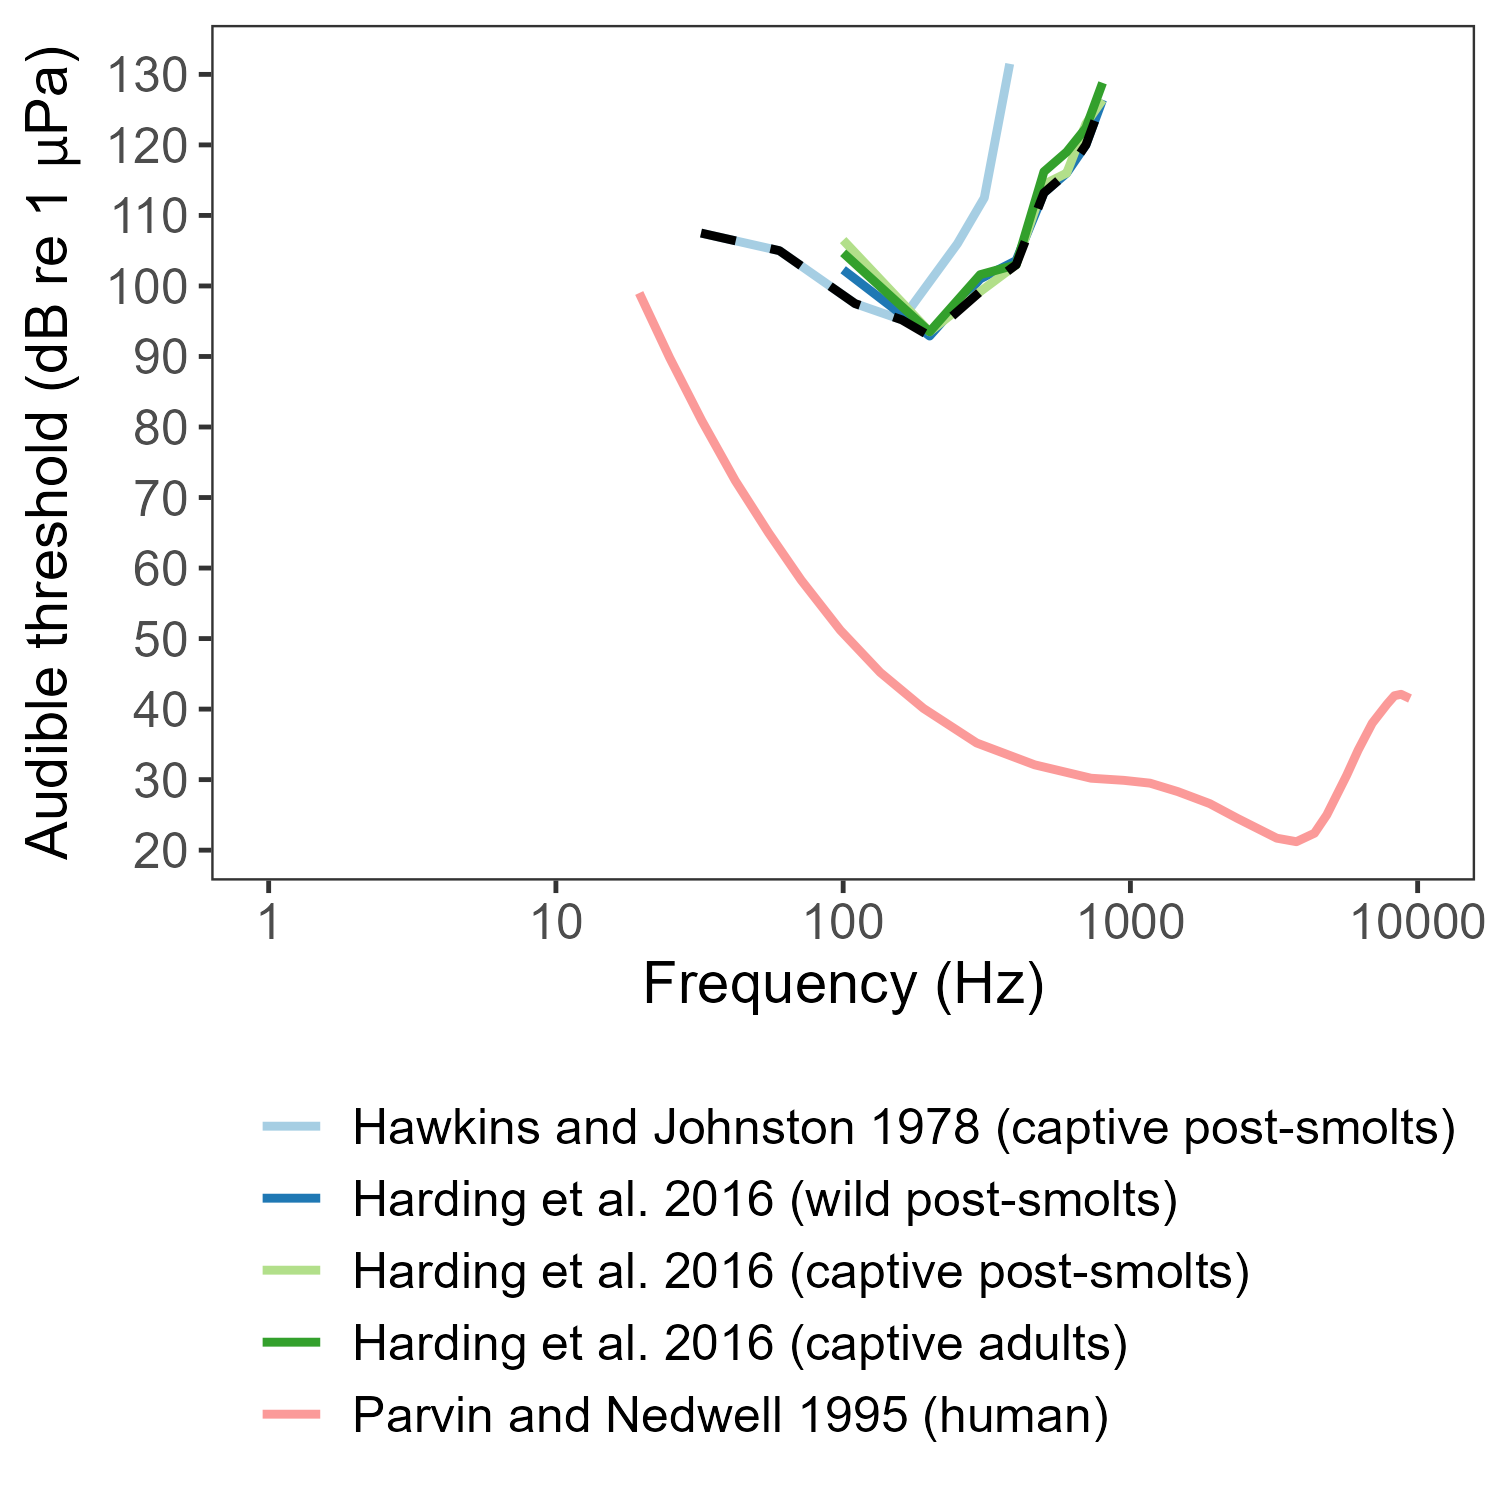 Figuren viser blå og grønne linjer med stiplet svart gjennomsnitt for hva som er kjent hørselsterskler for laks og rød linje for menneske ved ulike frekvenser.